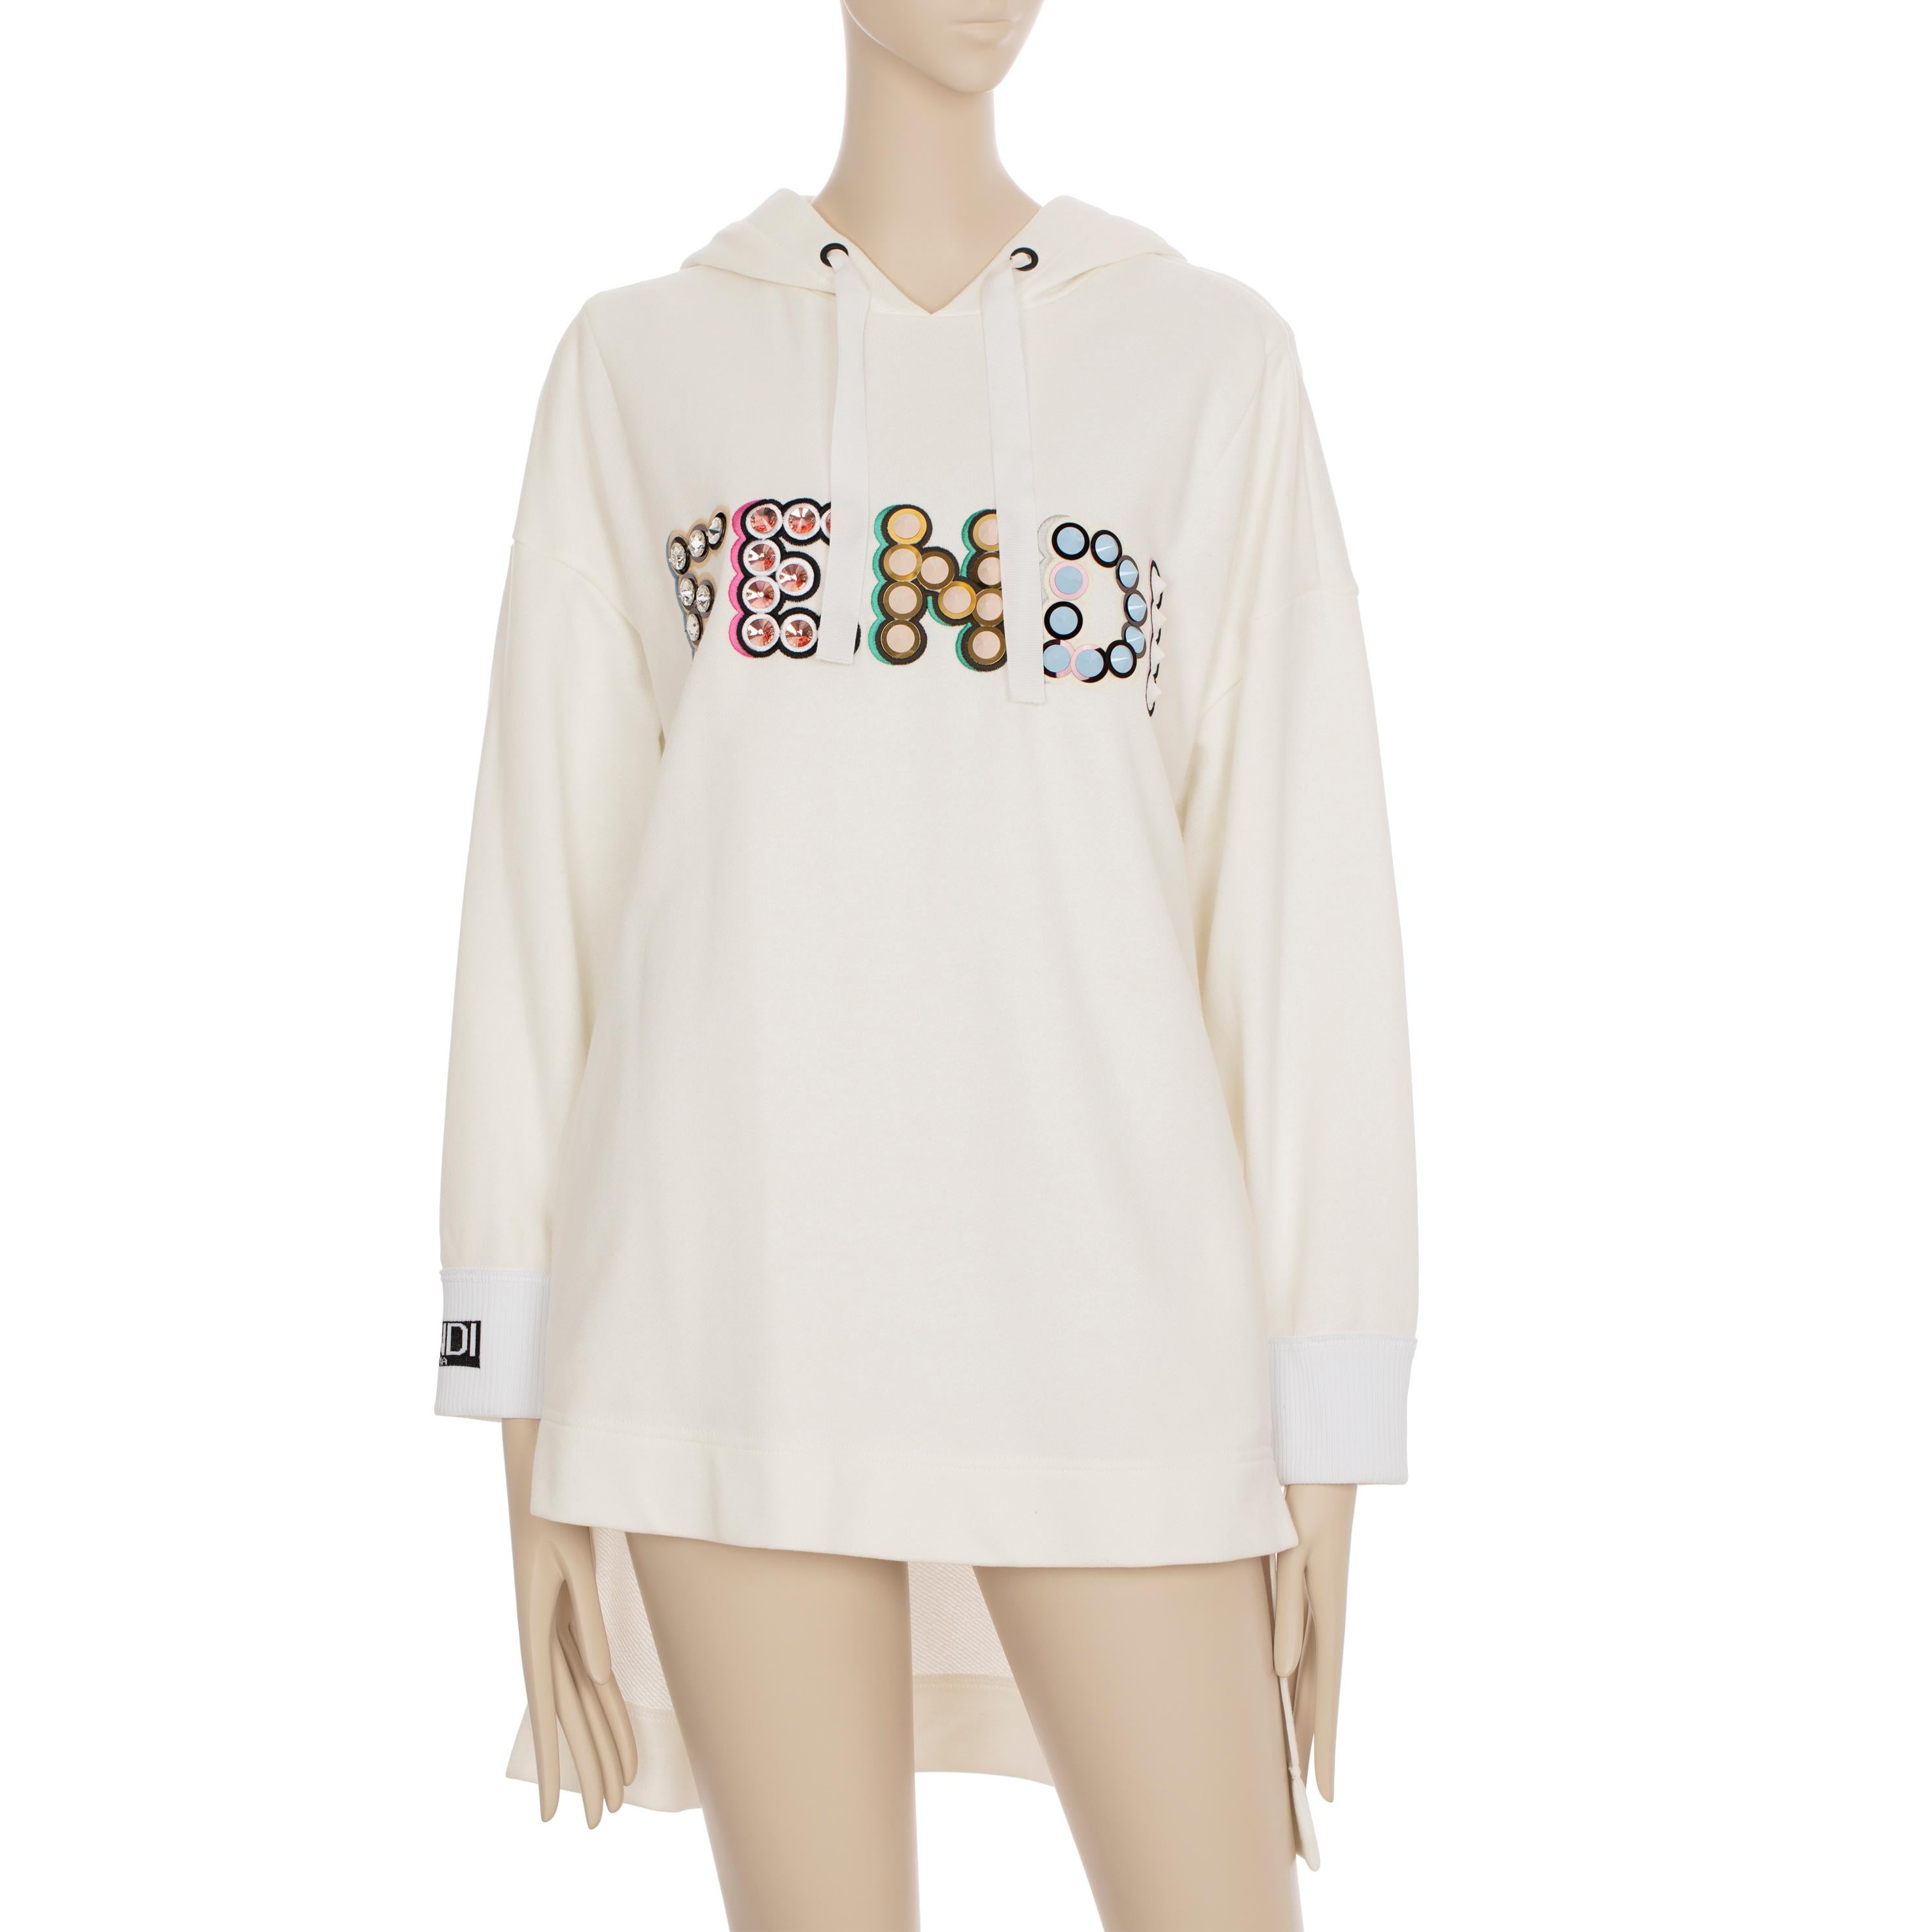 Der Oversized Hooded Sweater von Fendi ist perfekt für den Alltag. Das schlichte Design wird durch dezente Logodetails aufgewertet und macht ihn bequem und modern zugleich. Mit seiner Oversized-Passform ist dieser Pullover sowohl mühelos stilvoll